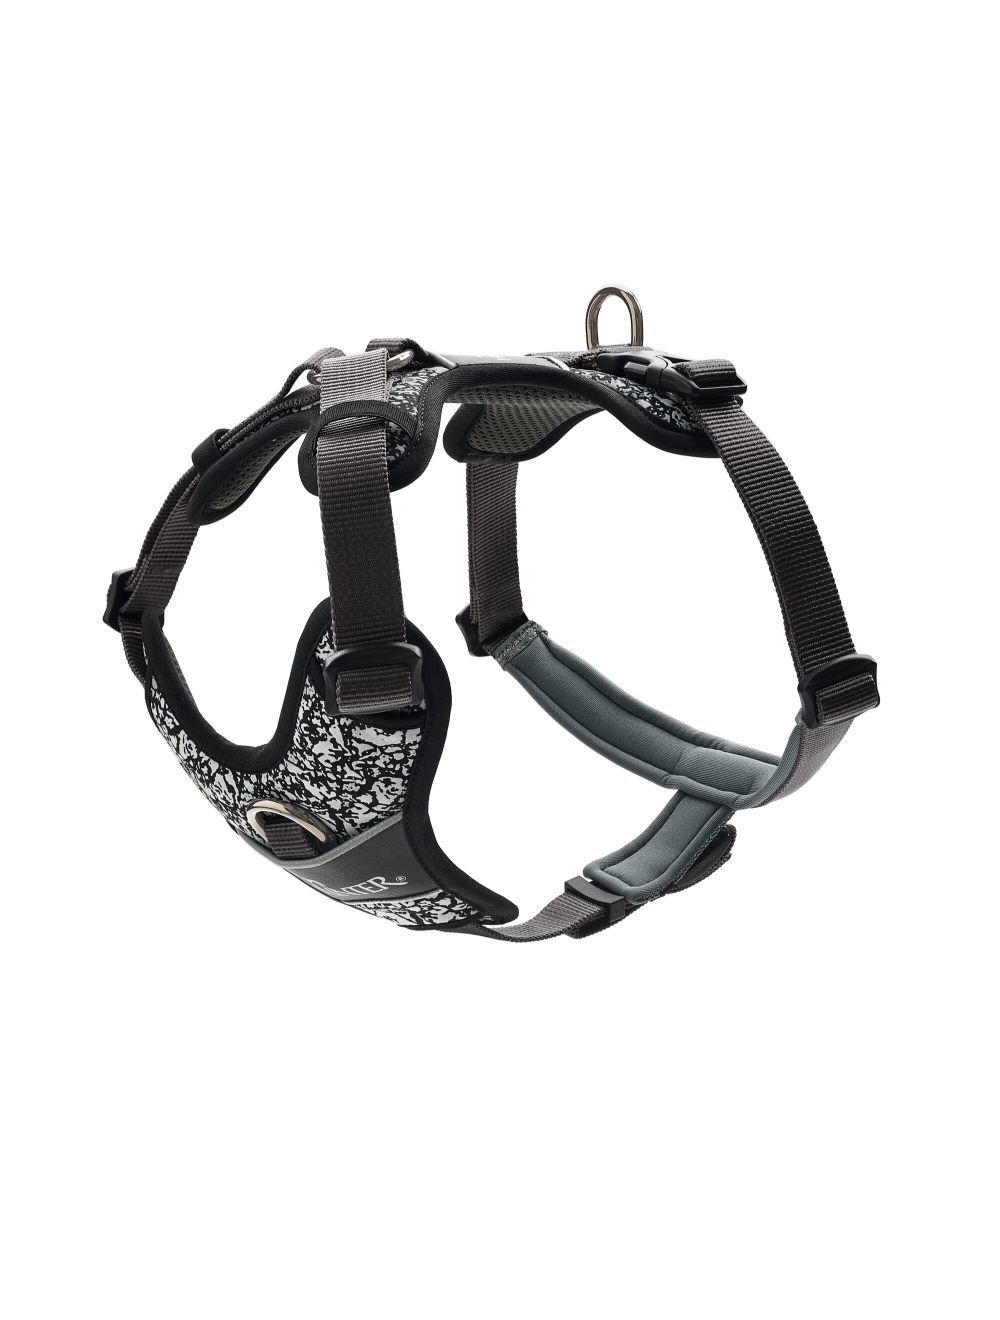 Hunter - Harness Divo Reflect XL, black/grey - (68963) - Kjæledyr og utstyr